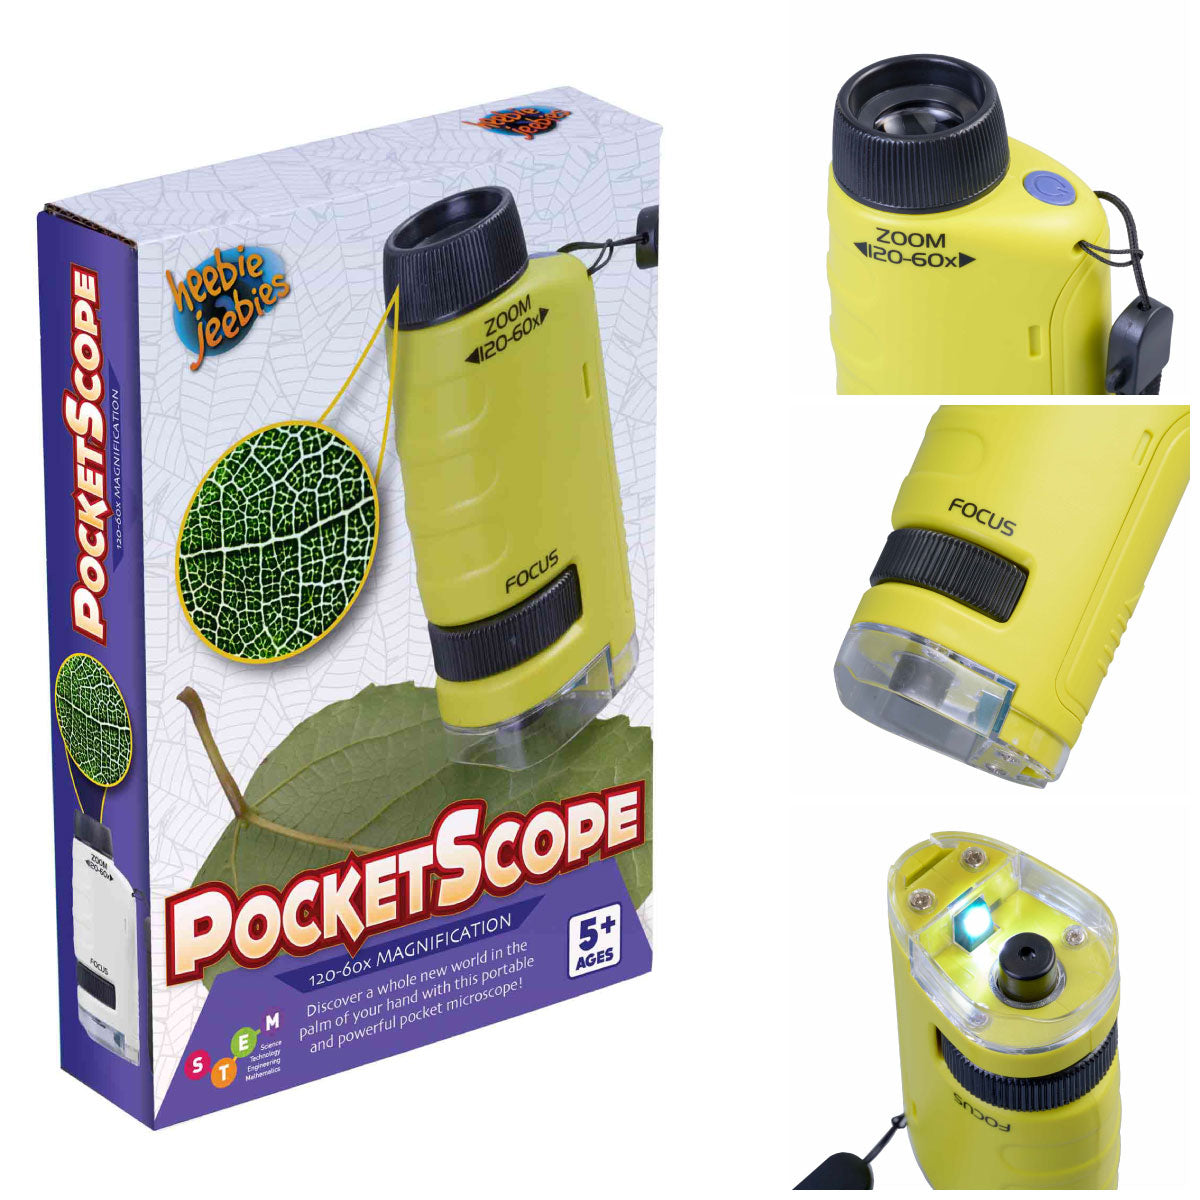 Heebie Jeebies PocketScope Magnifier